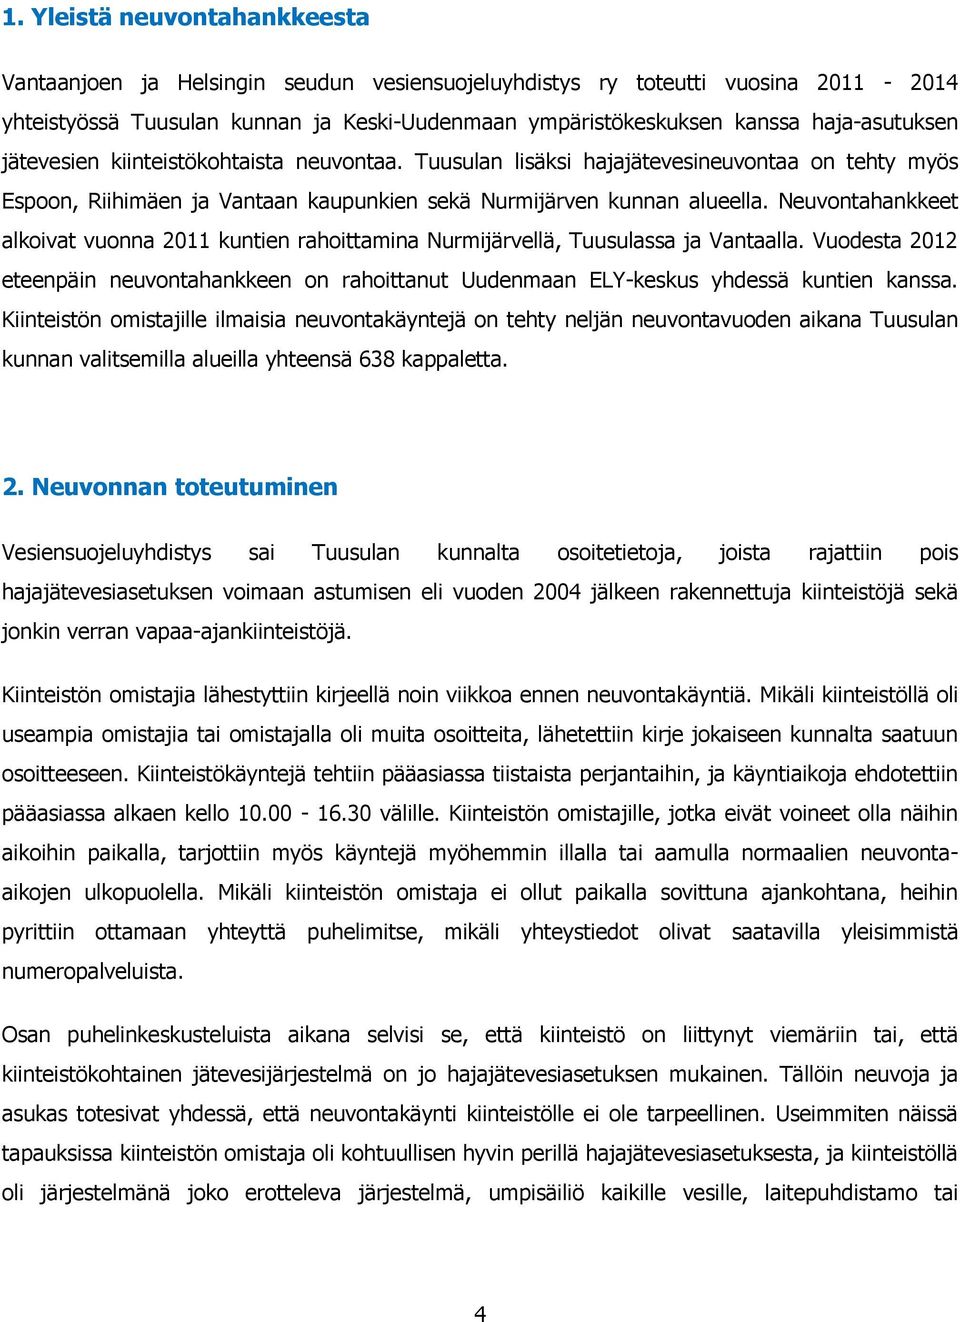 Neuvontahankkeet alkoivat vuonna 2011 kuntien rahoittamina Nurmijärvellä, Tuusulassa ja Vantaalla. Vuodesta 2012 eteenpäin neuvontahankkeen on rahoittanut Uudenmaan ELY-keskus yhdessä kuntien kanssa.